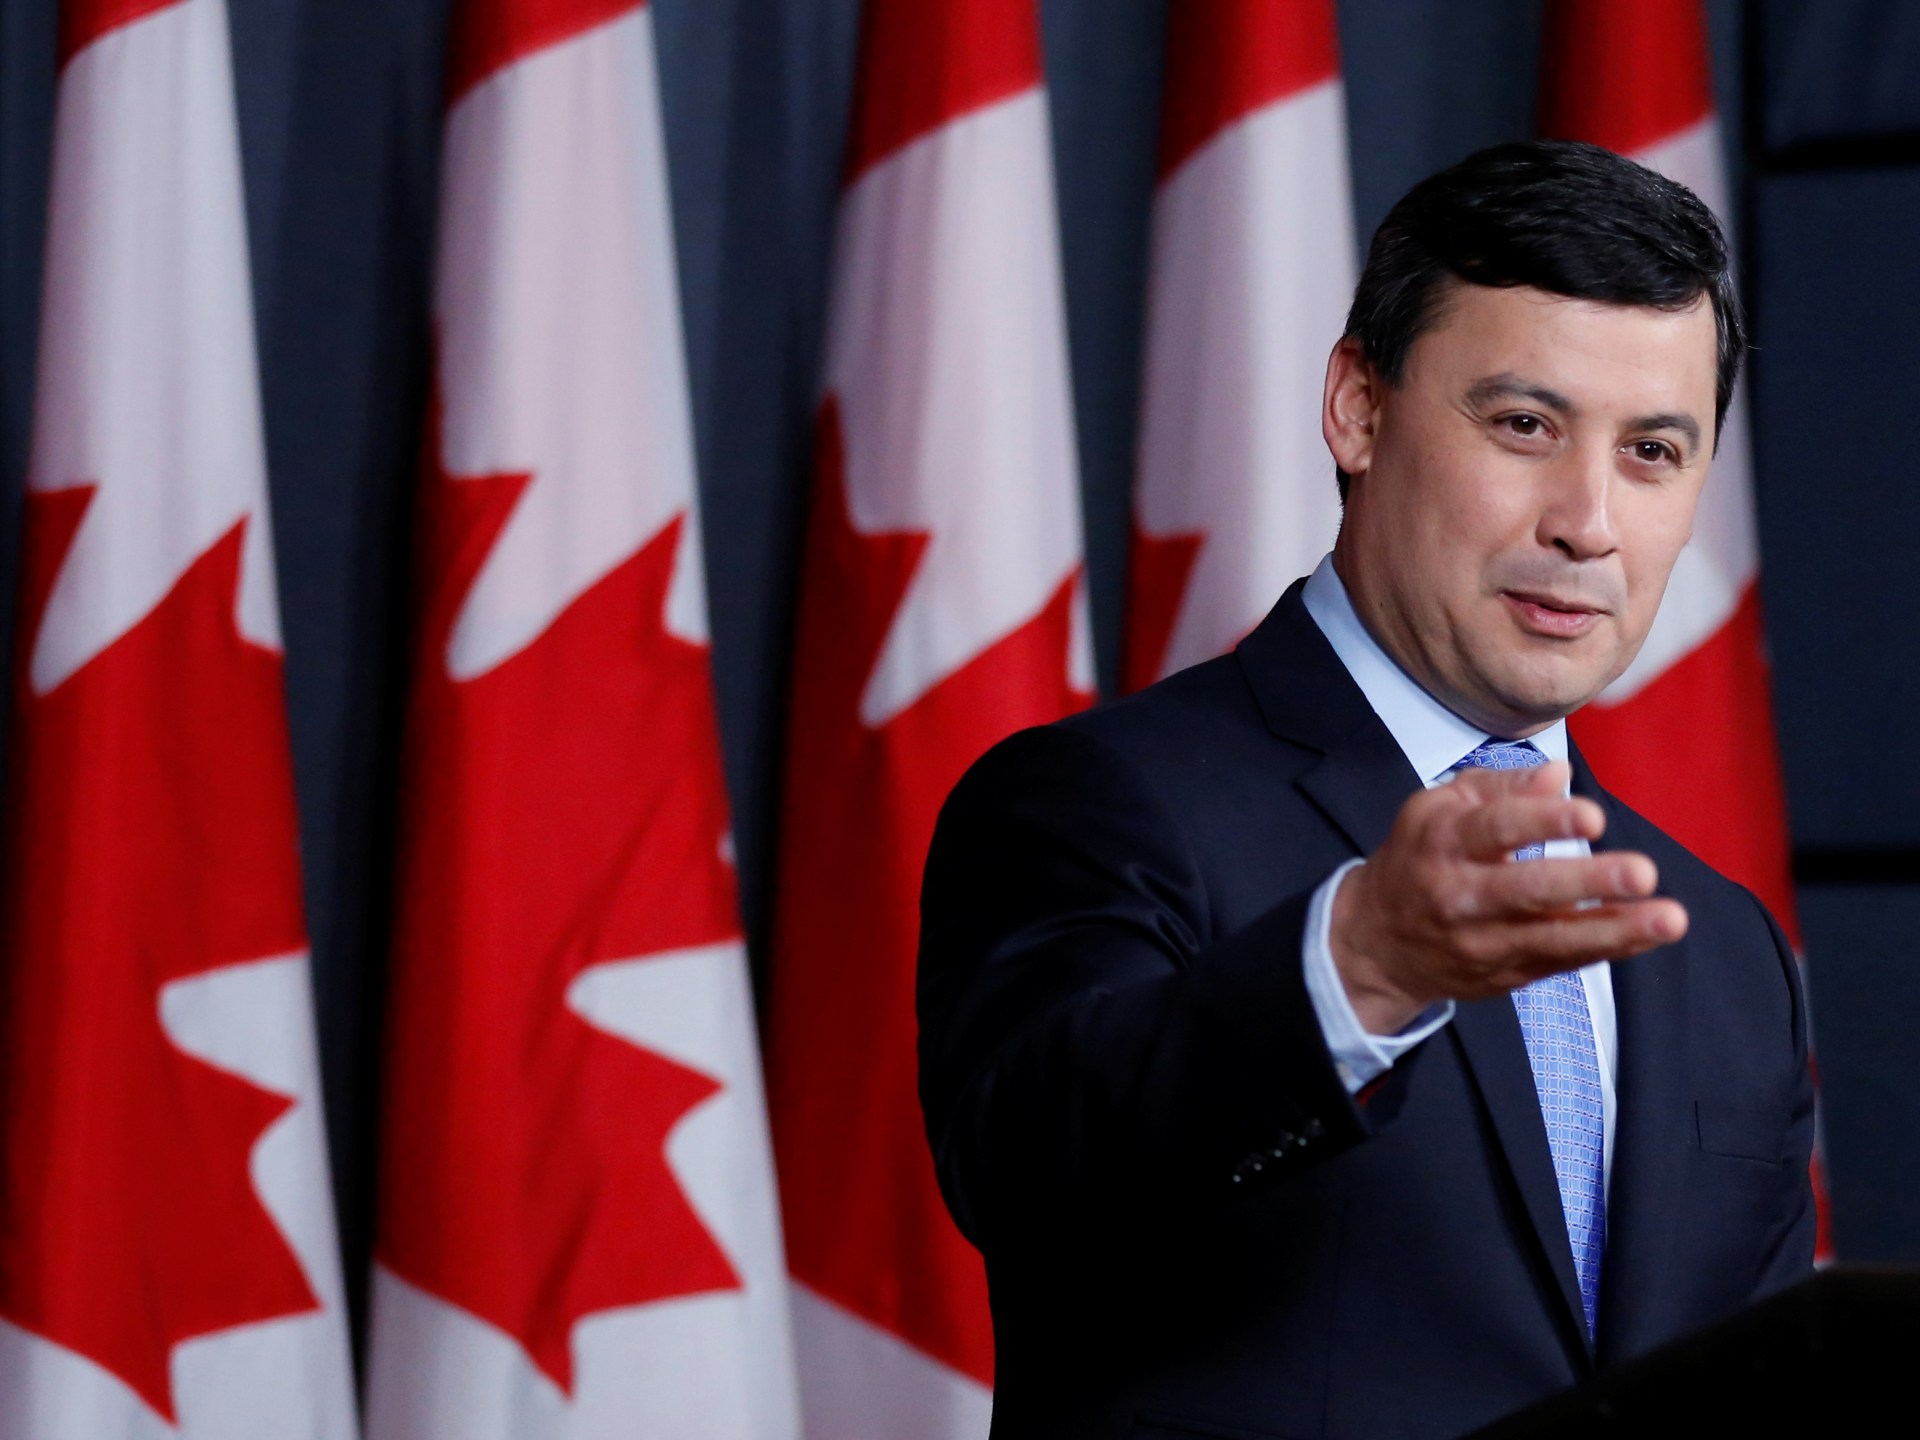 Kanada menuntut utusan China atas dugaan intimidasi anggota parlemen |  Berita Politik